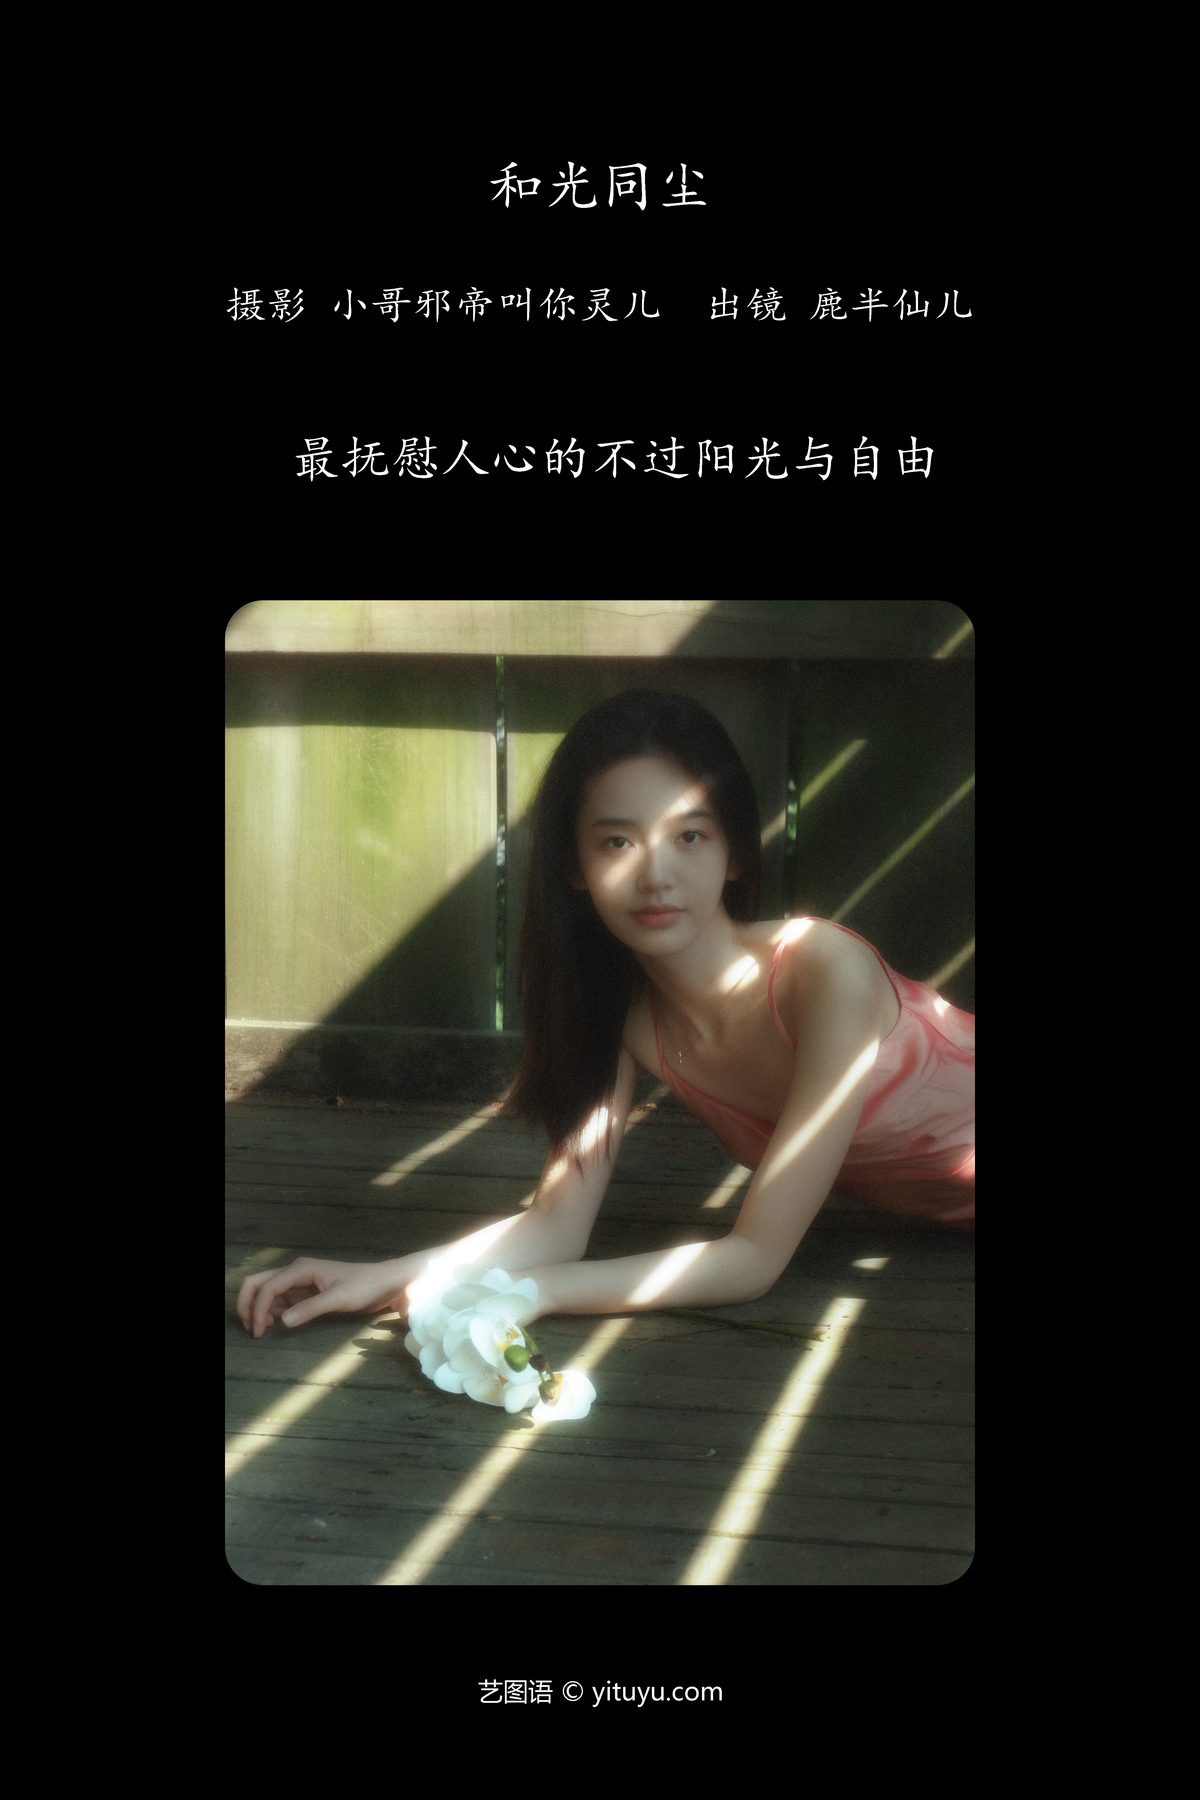 YiTuYu艺图语 Vol 4514 Lu Ban Xian Er 0001 6923953882.jpg